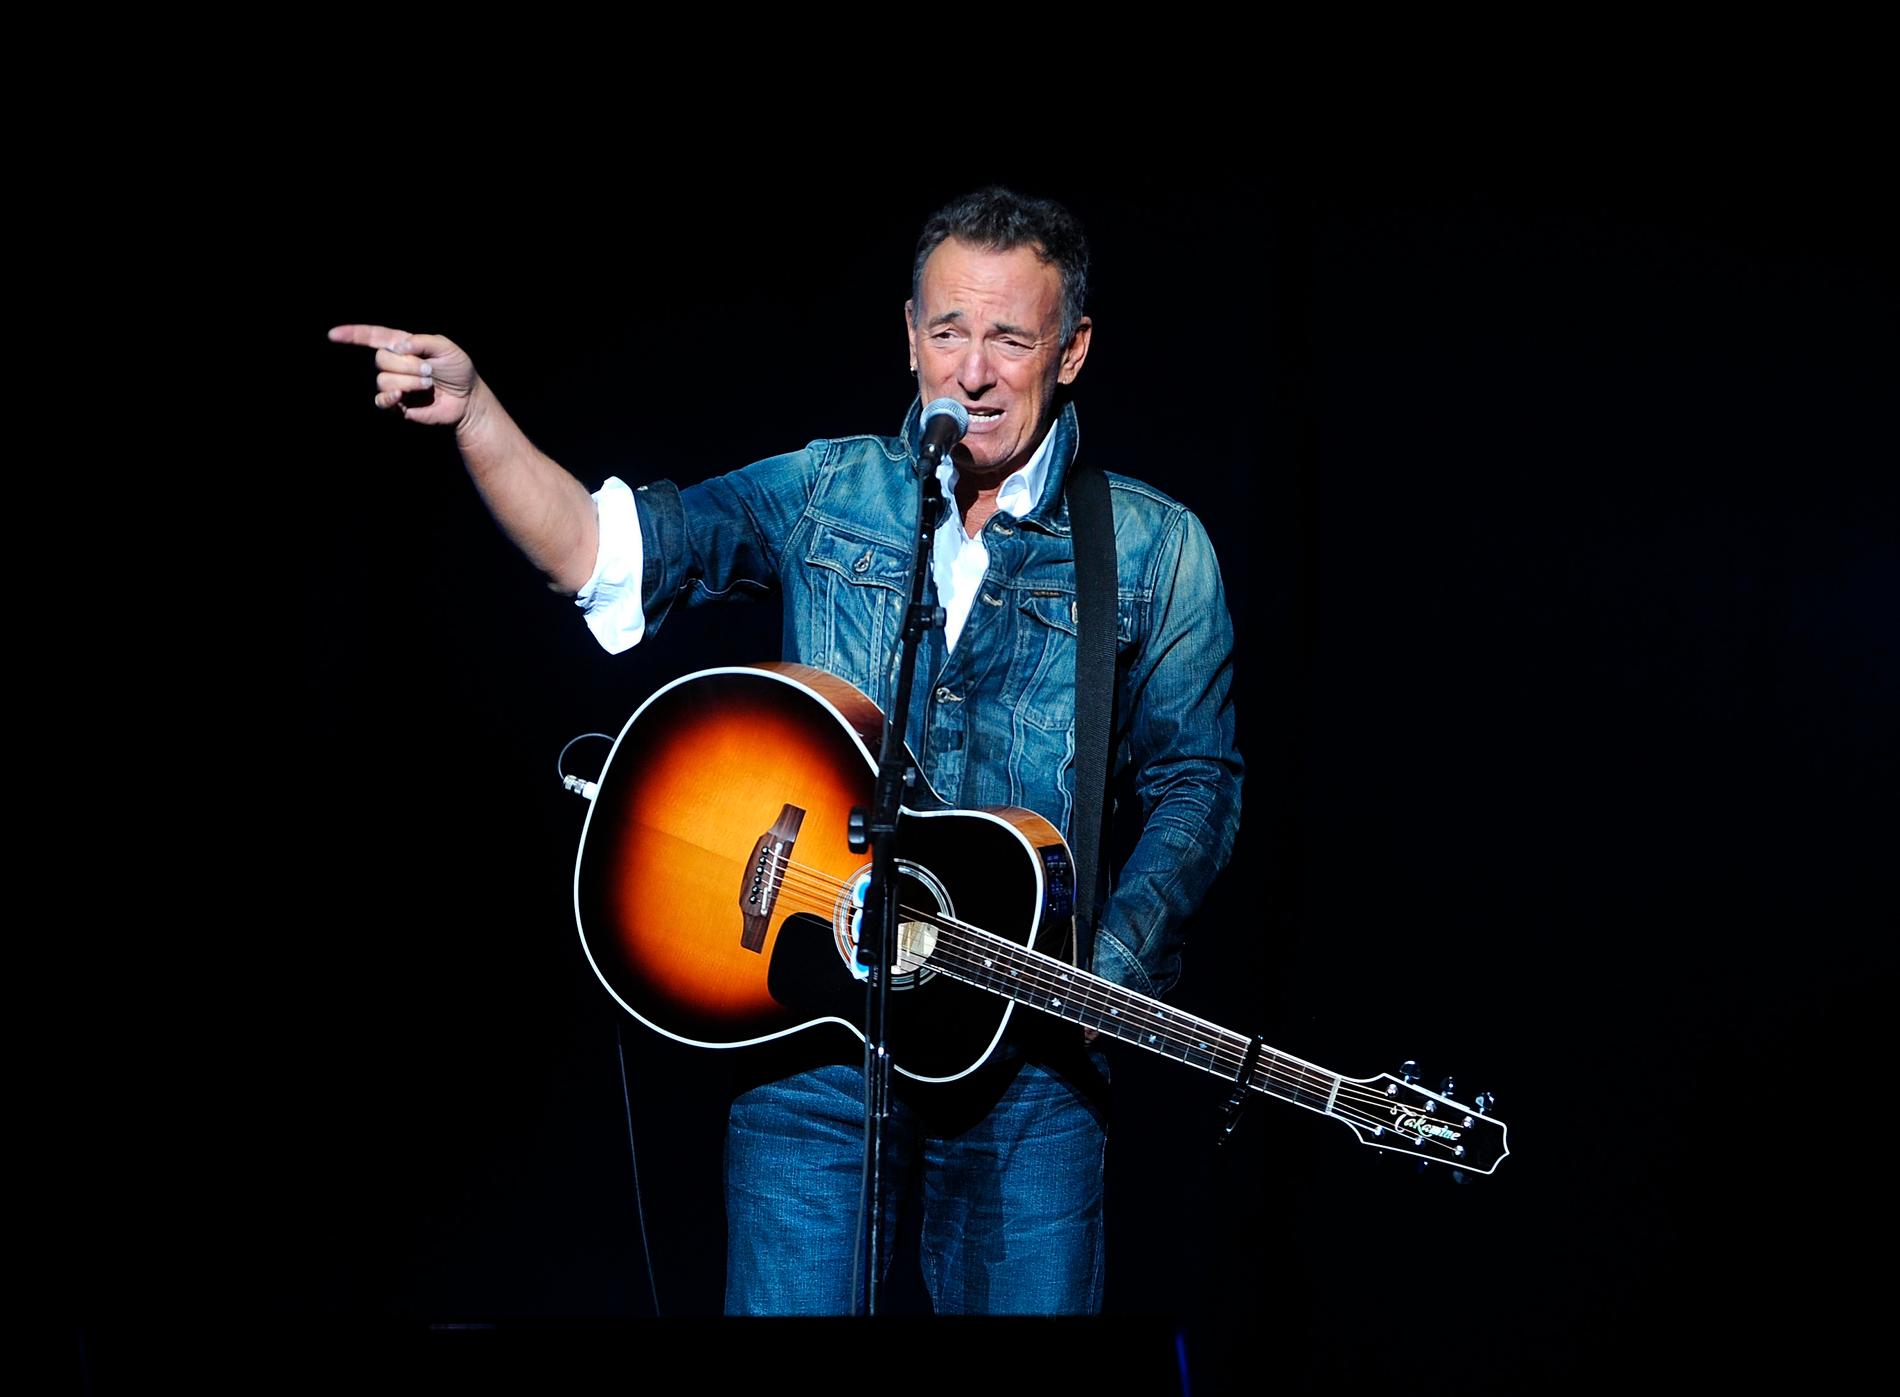 Bruce Springsteen har lånat ut sin låt "My hometown" til en reklamfilm för Joe Biden. Akrivbild.